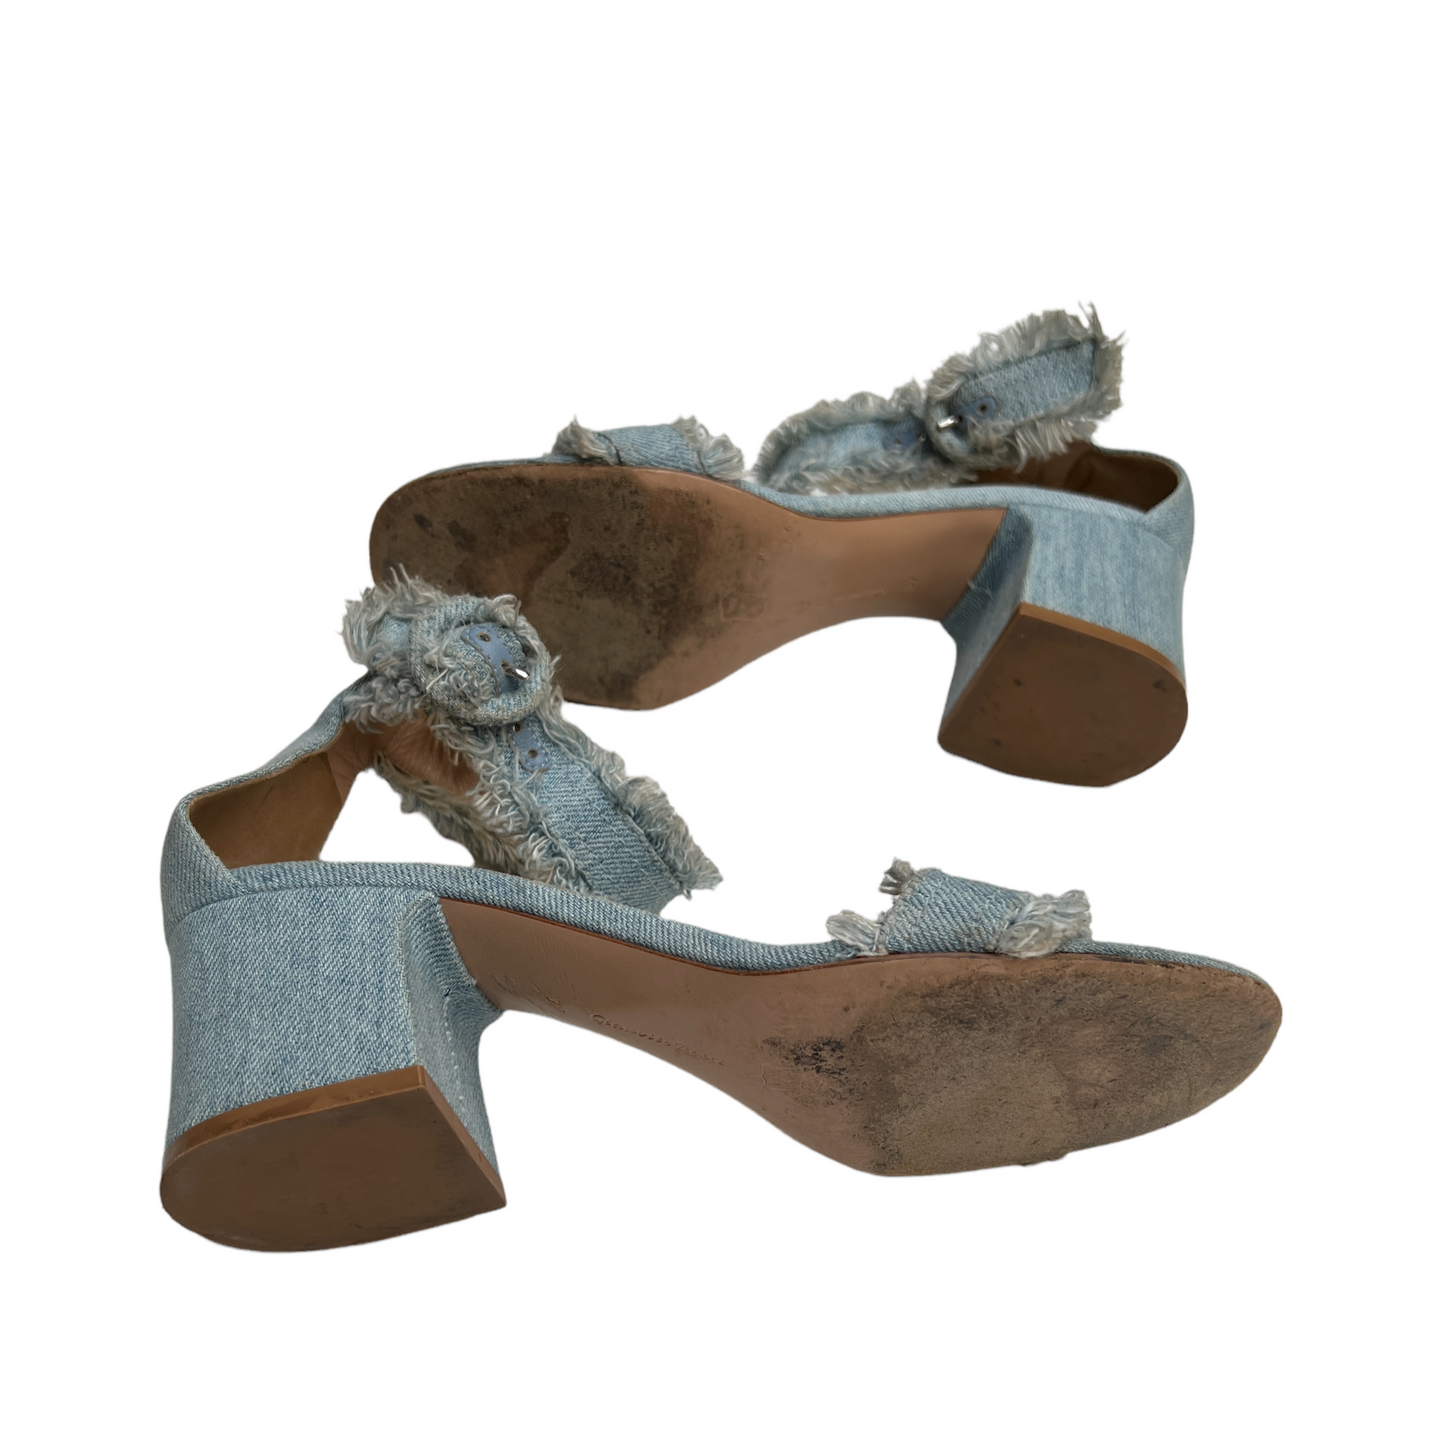 Denim Heeled Sandals - 6.5